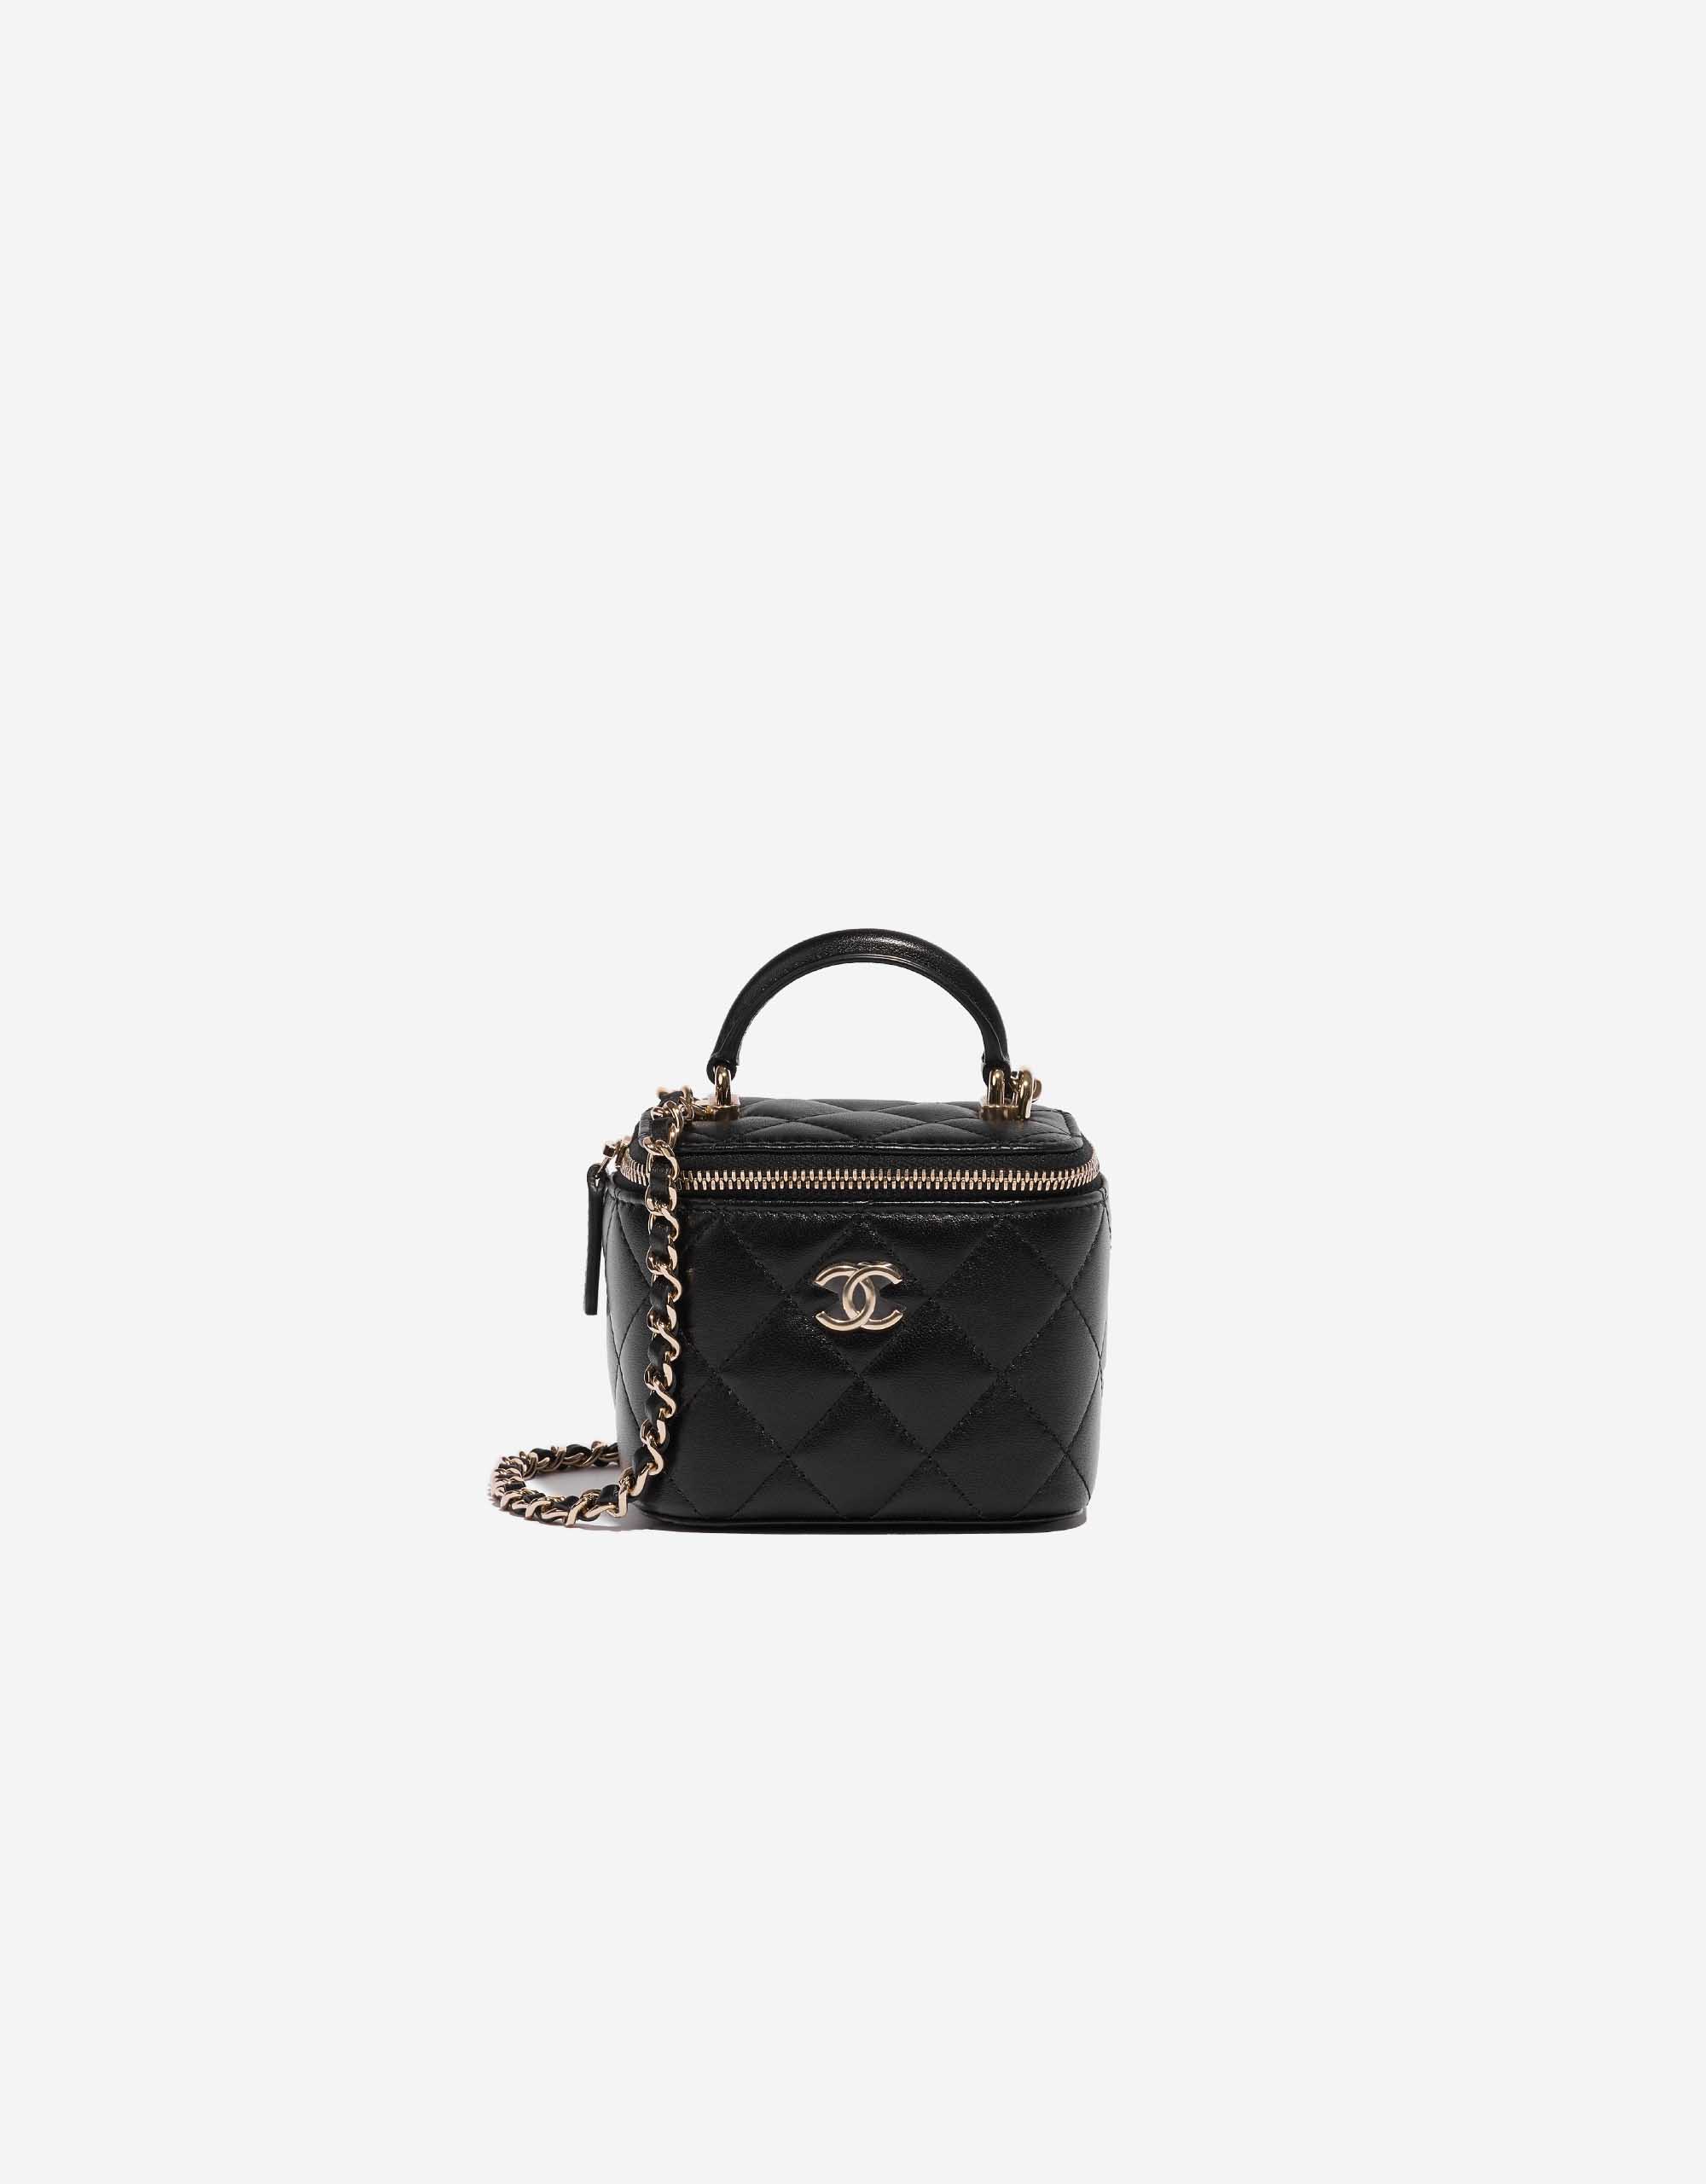 Chanel Small Vanity w/Chain - Black Mini Bags, Handbags